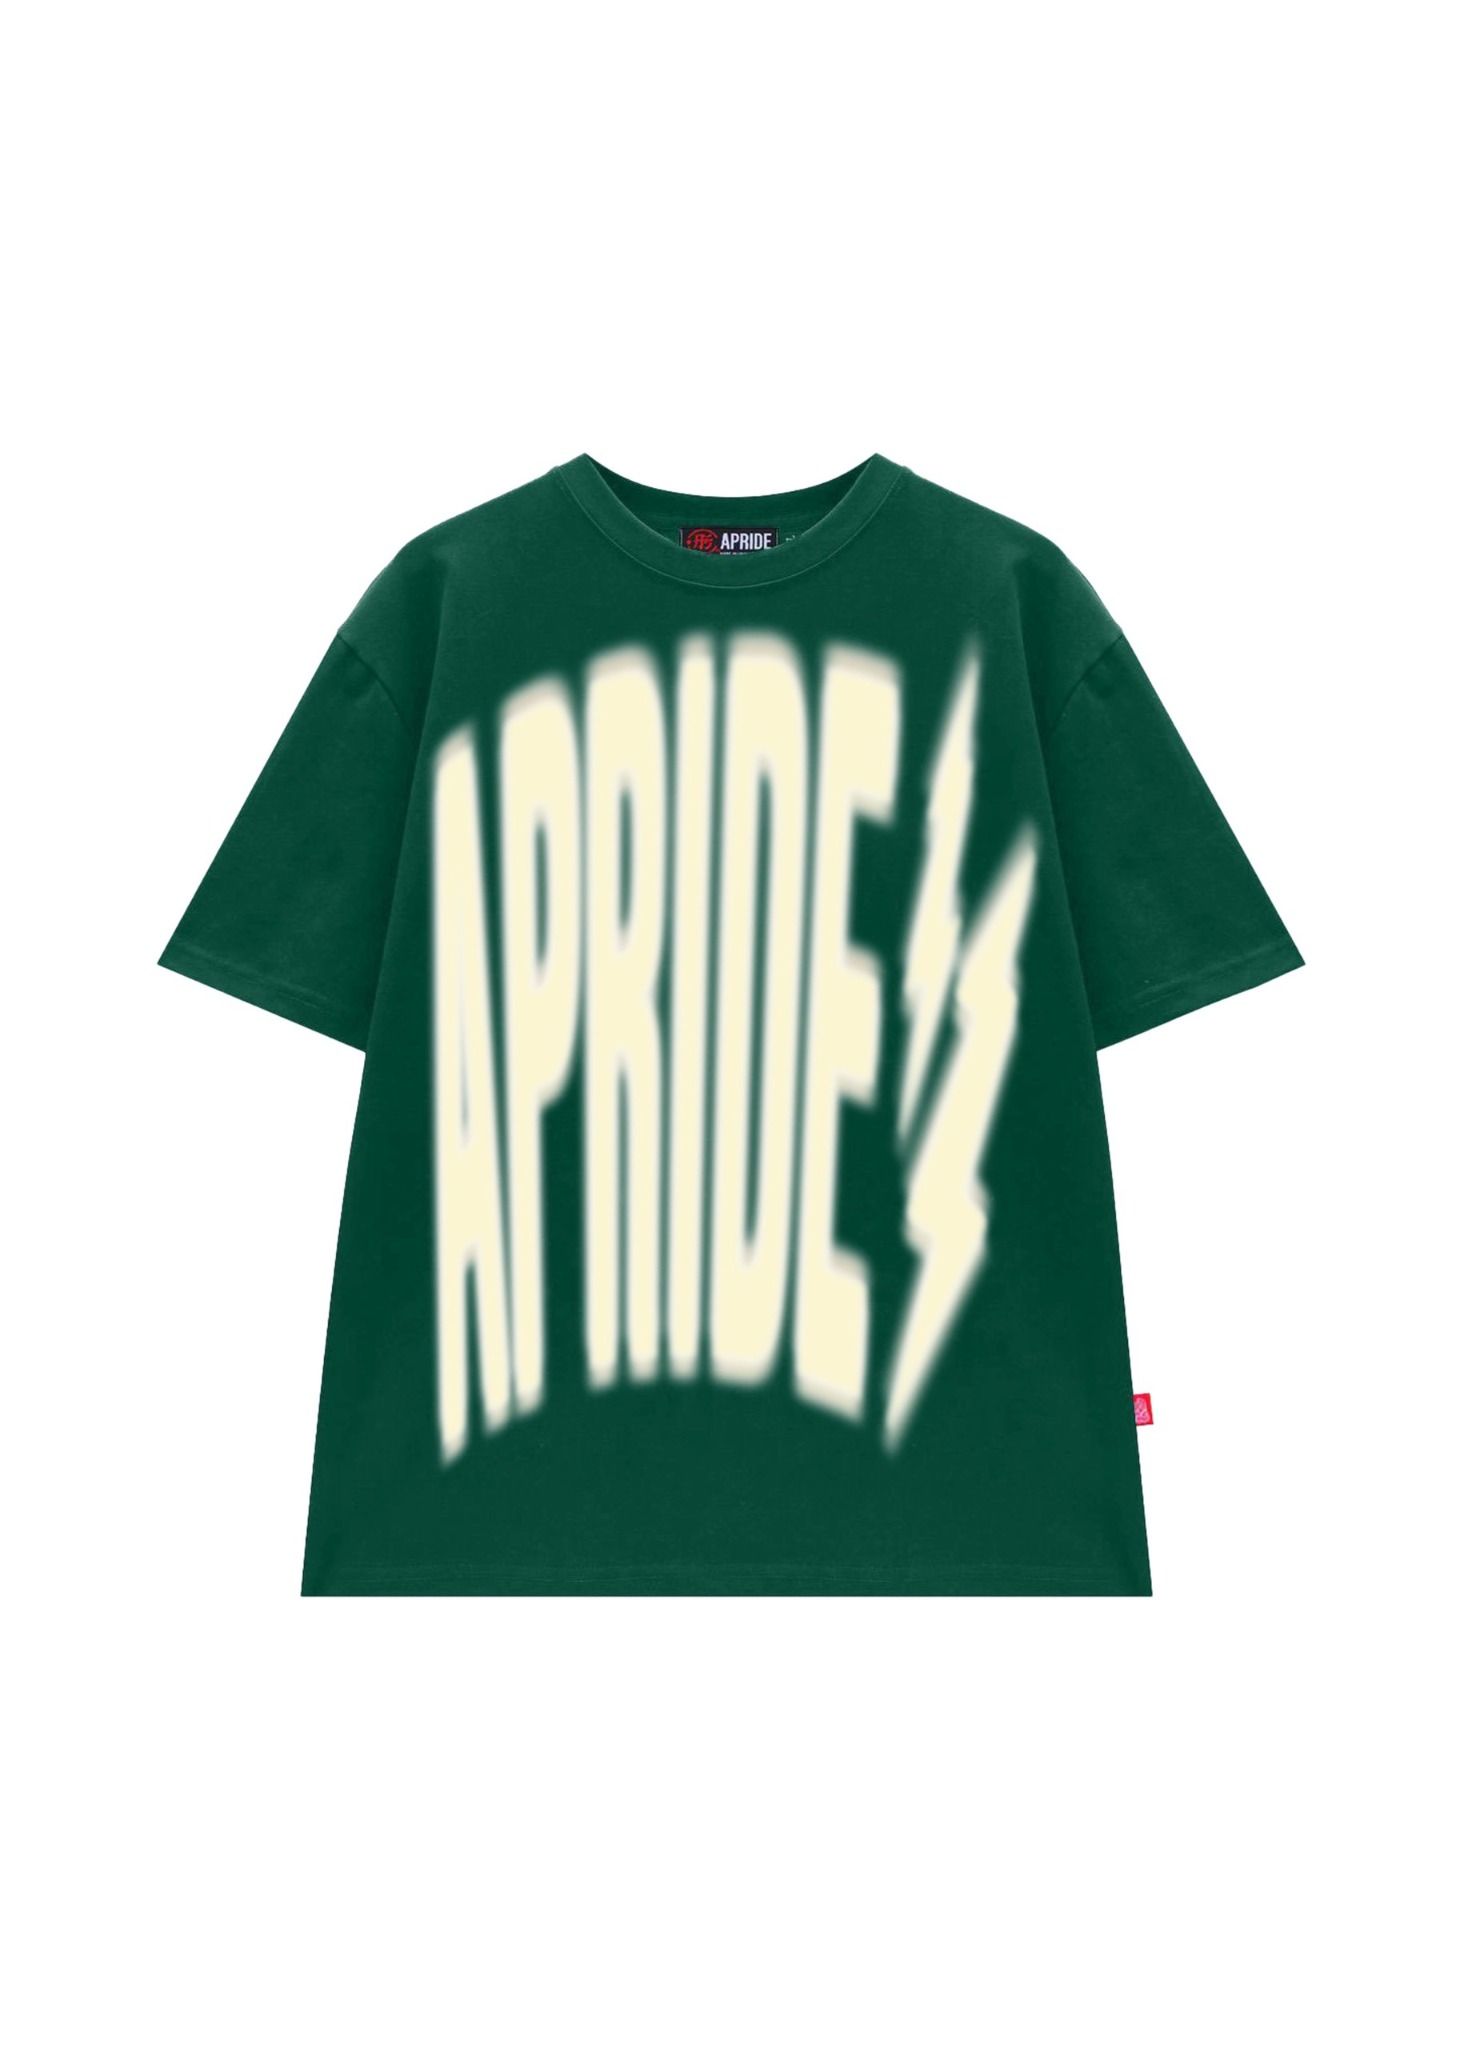  Tee Apride Blurred Logo - Green 